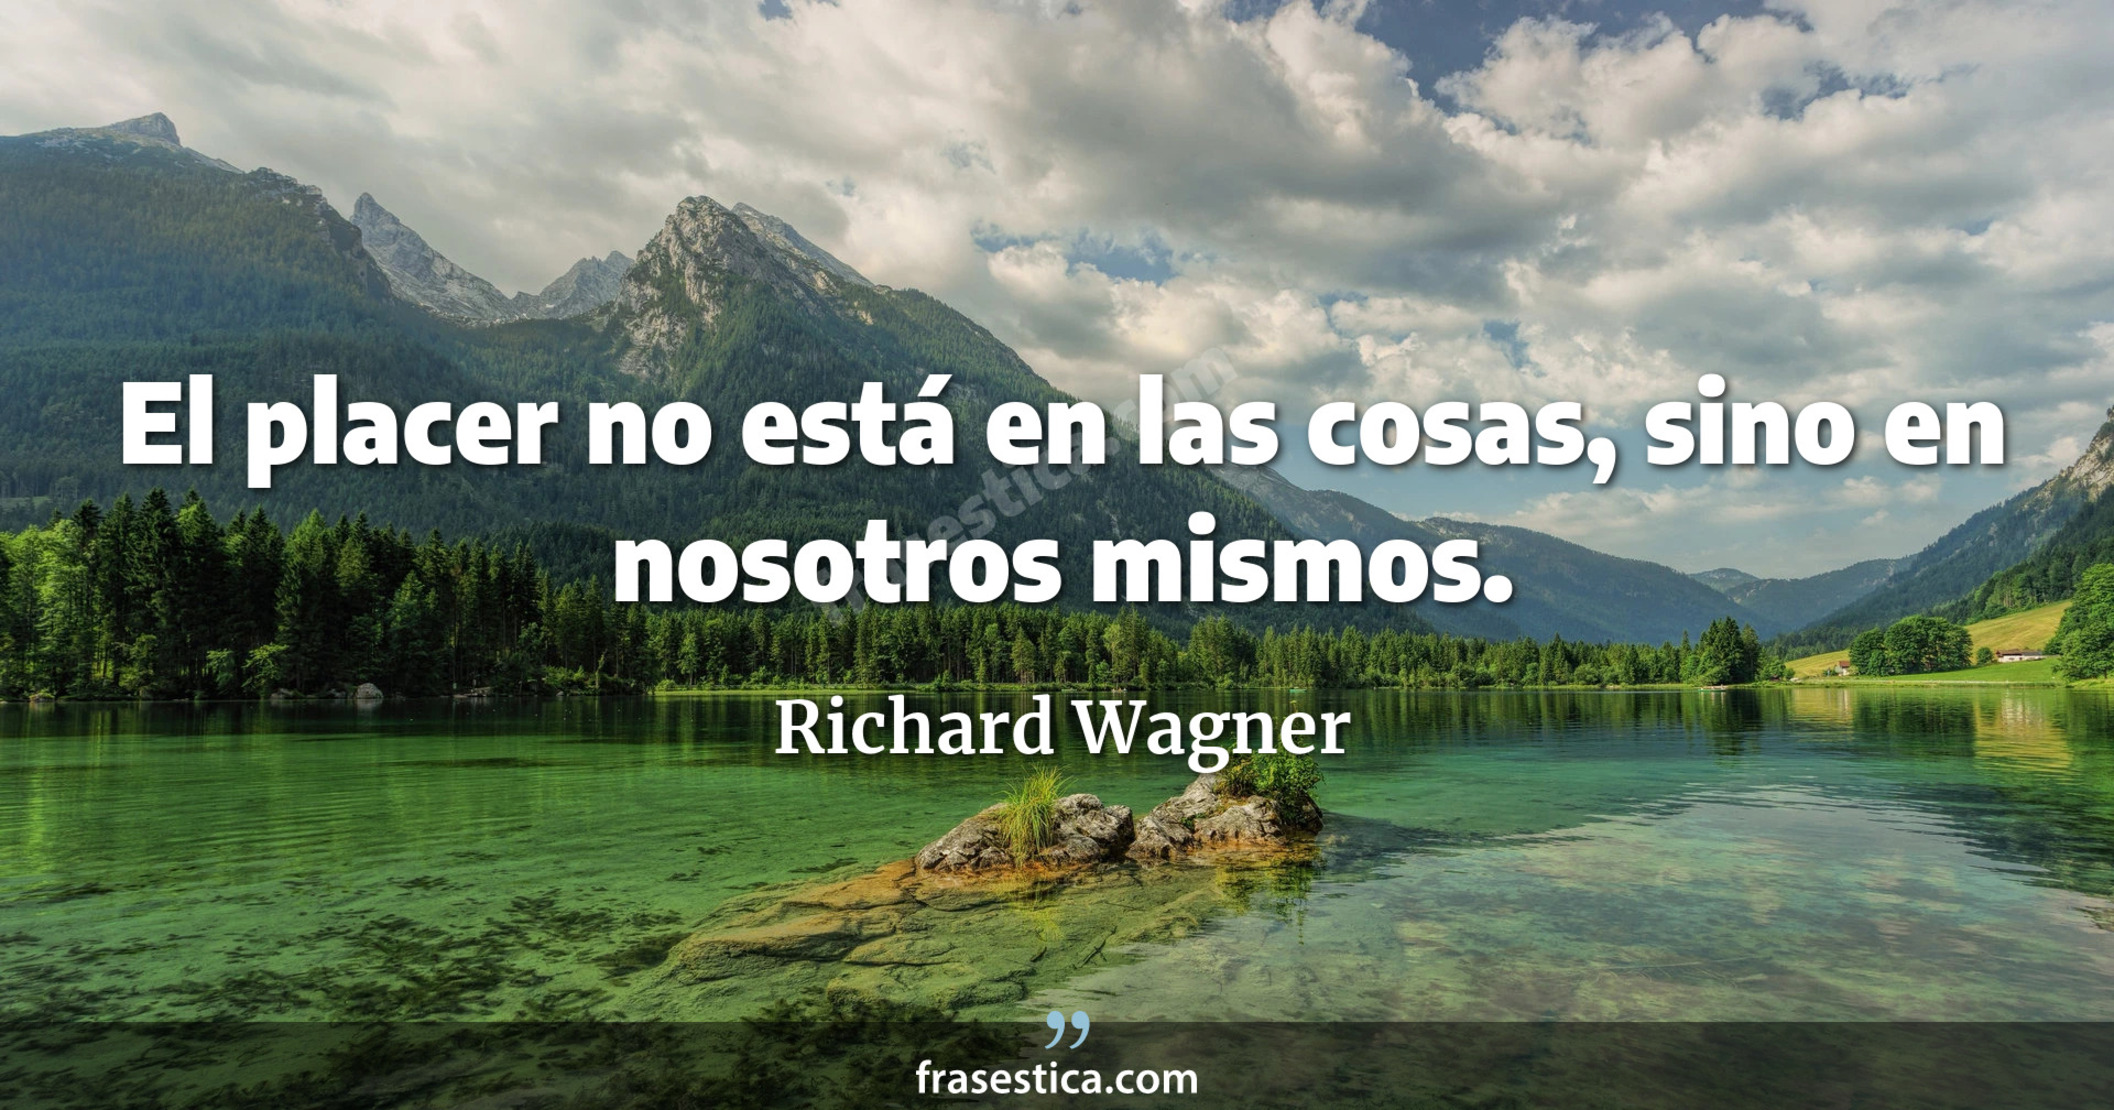 El placer no está en las cosas, sino en nosotros mismos. - Richard Wagner